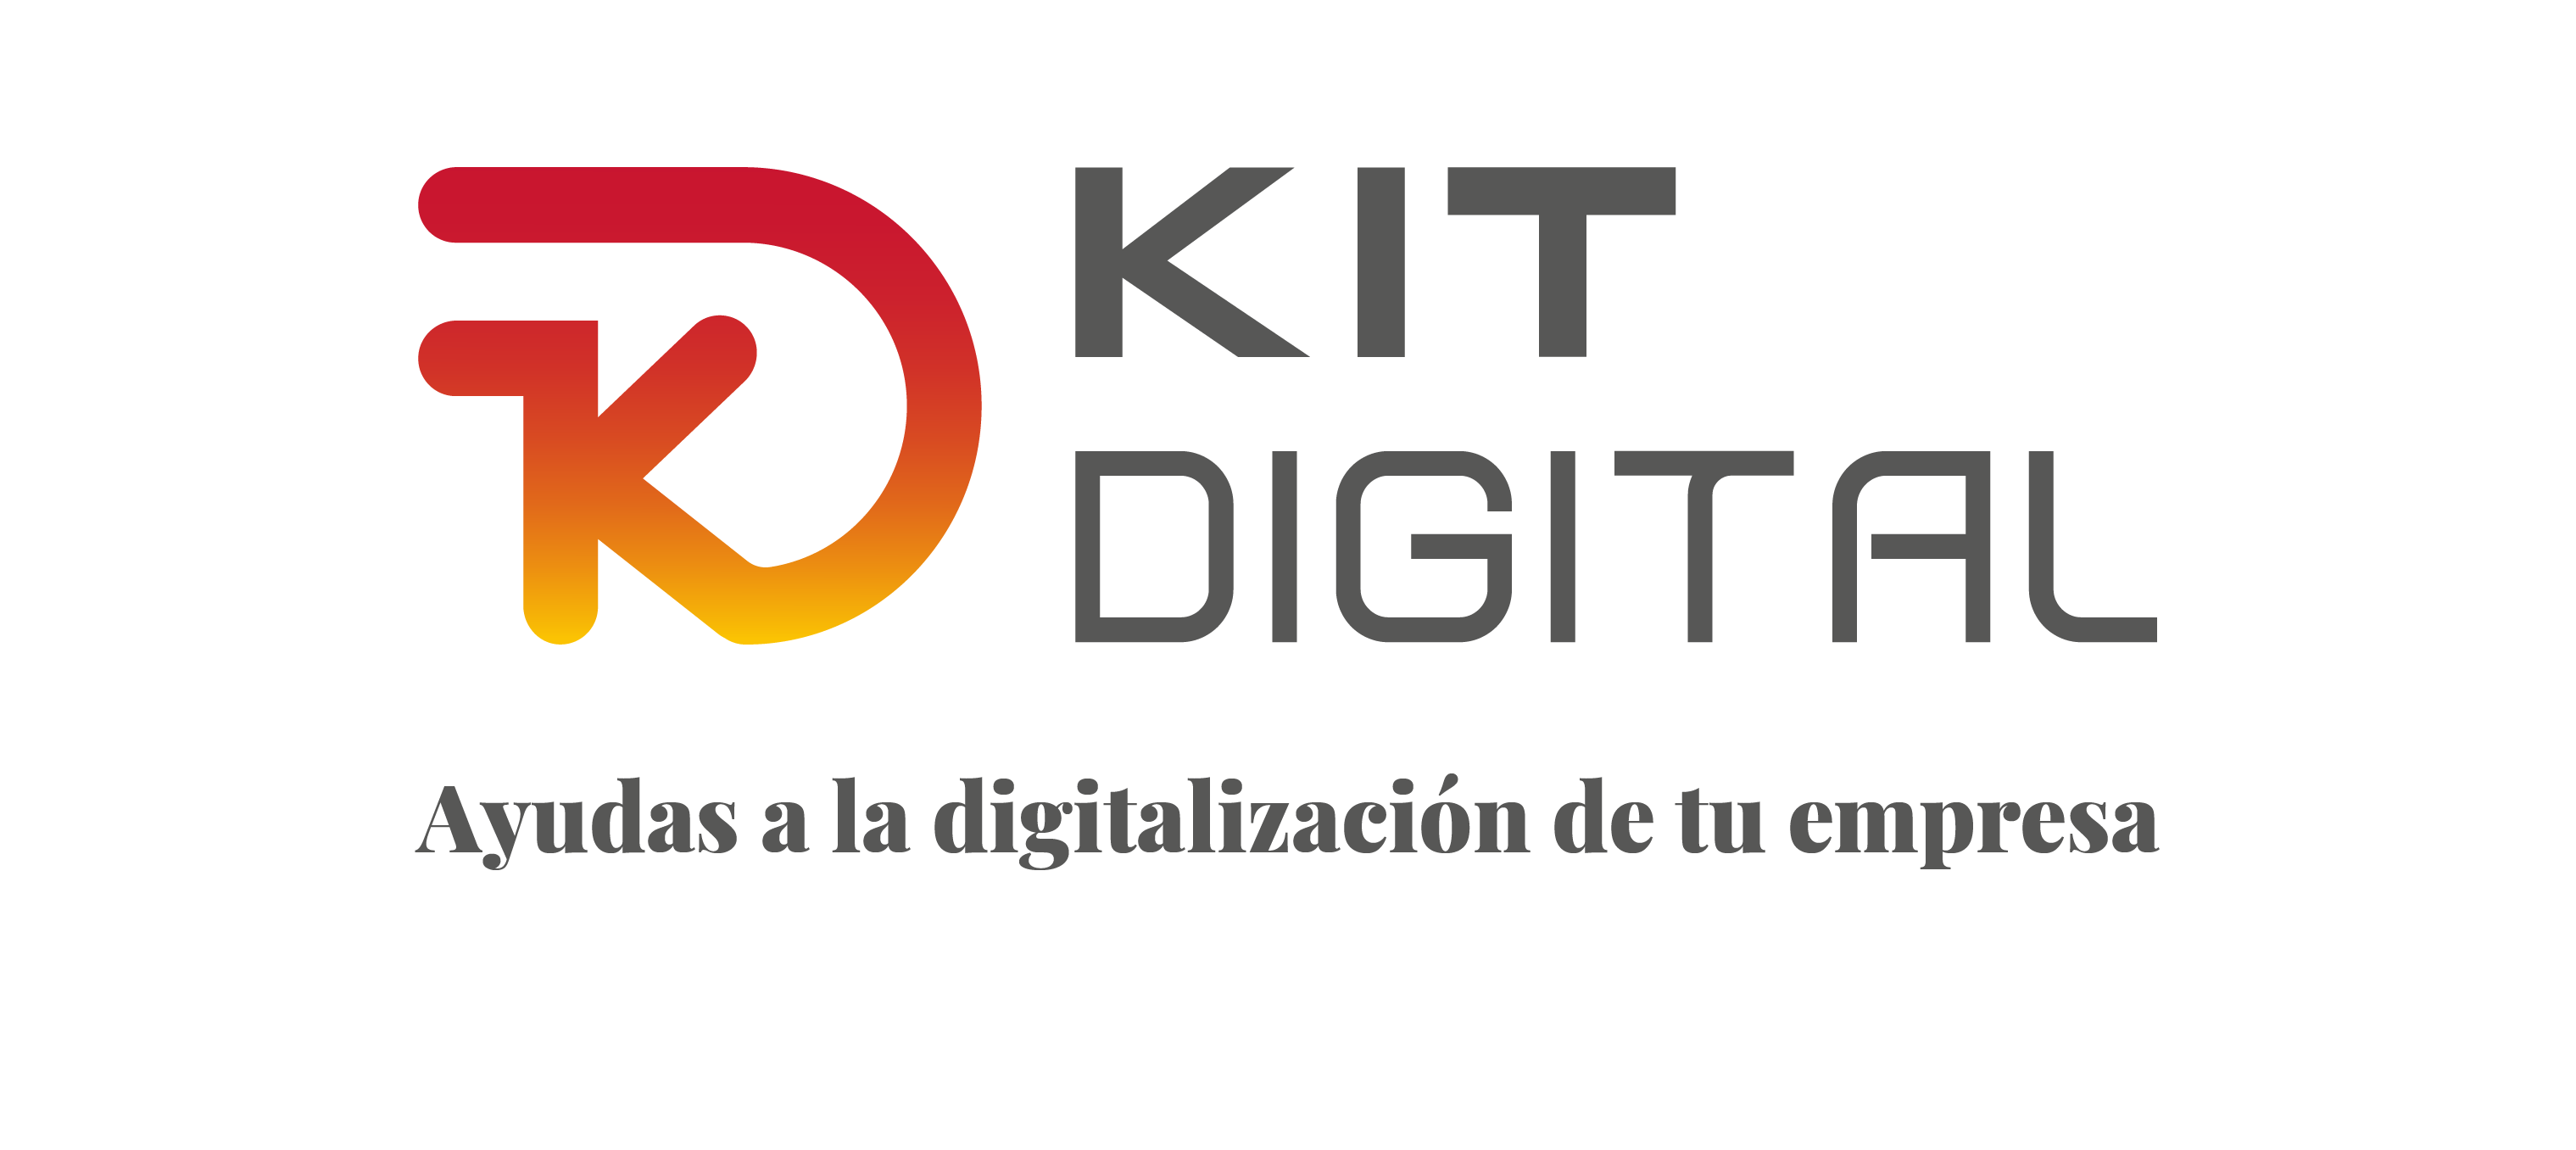 Kit Digital para subvencionar la digitalización que buscas